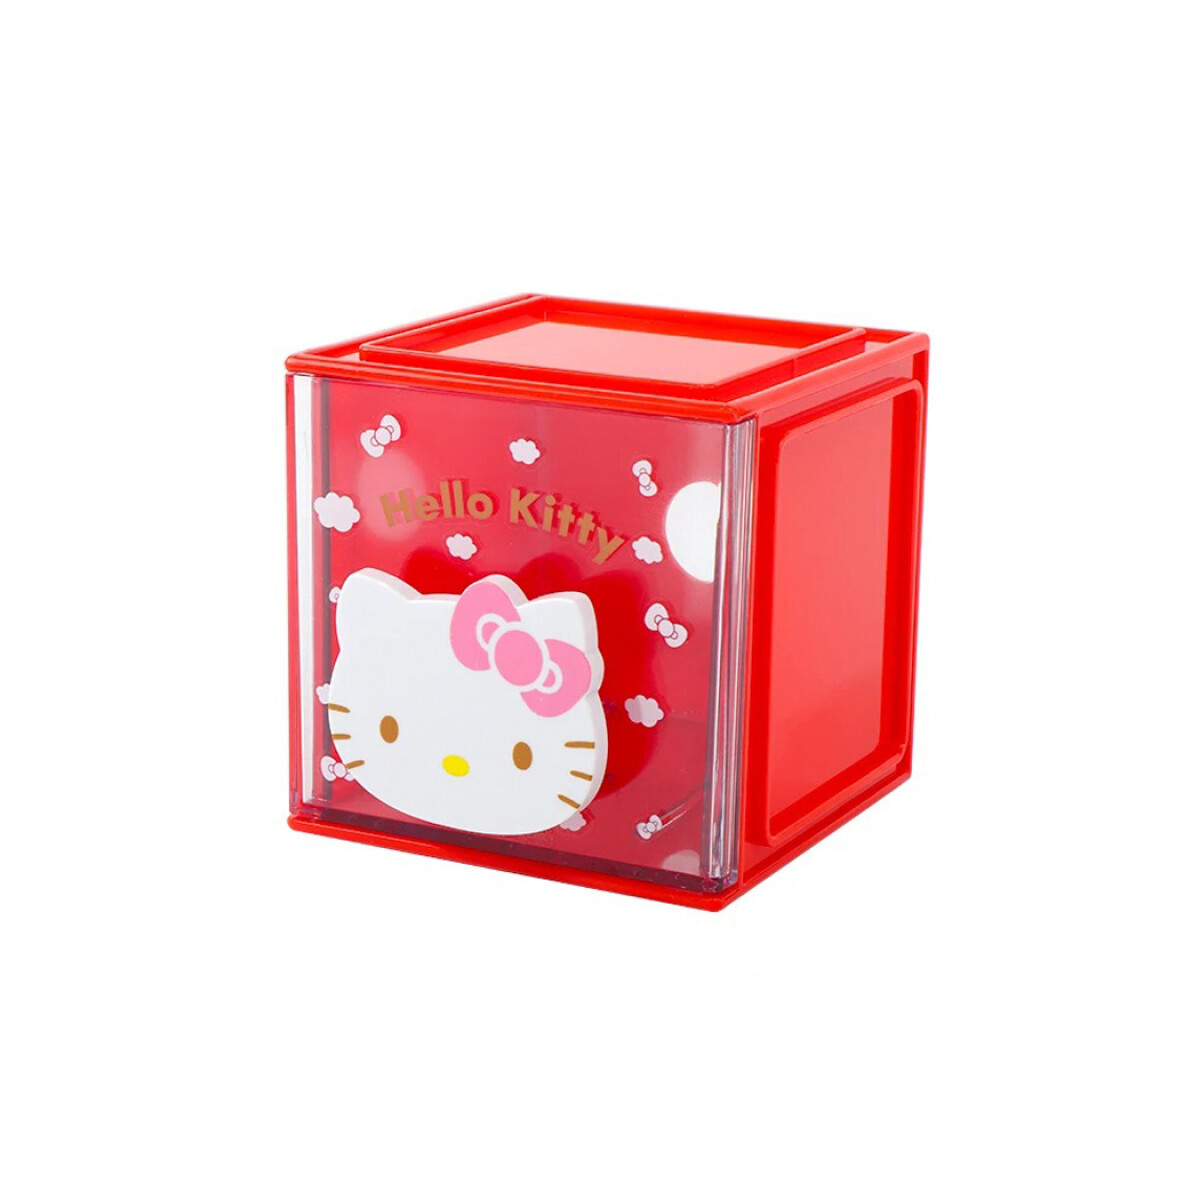 Organizador mini Hello Kitty 